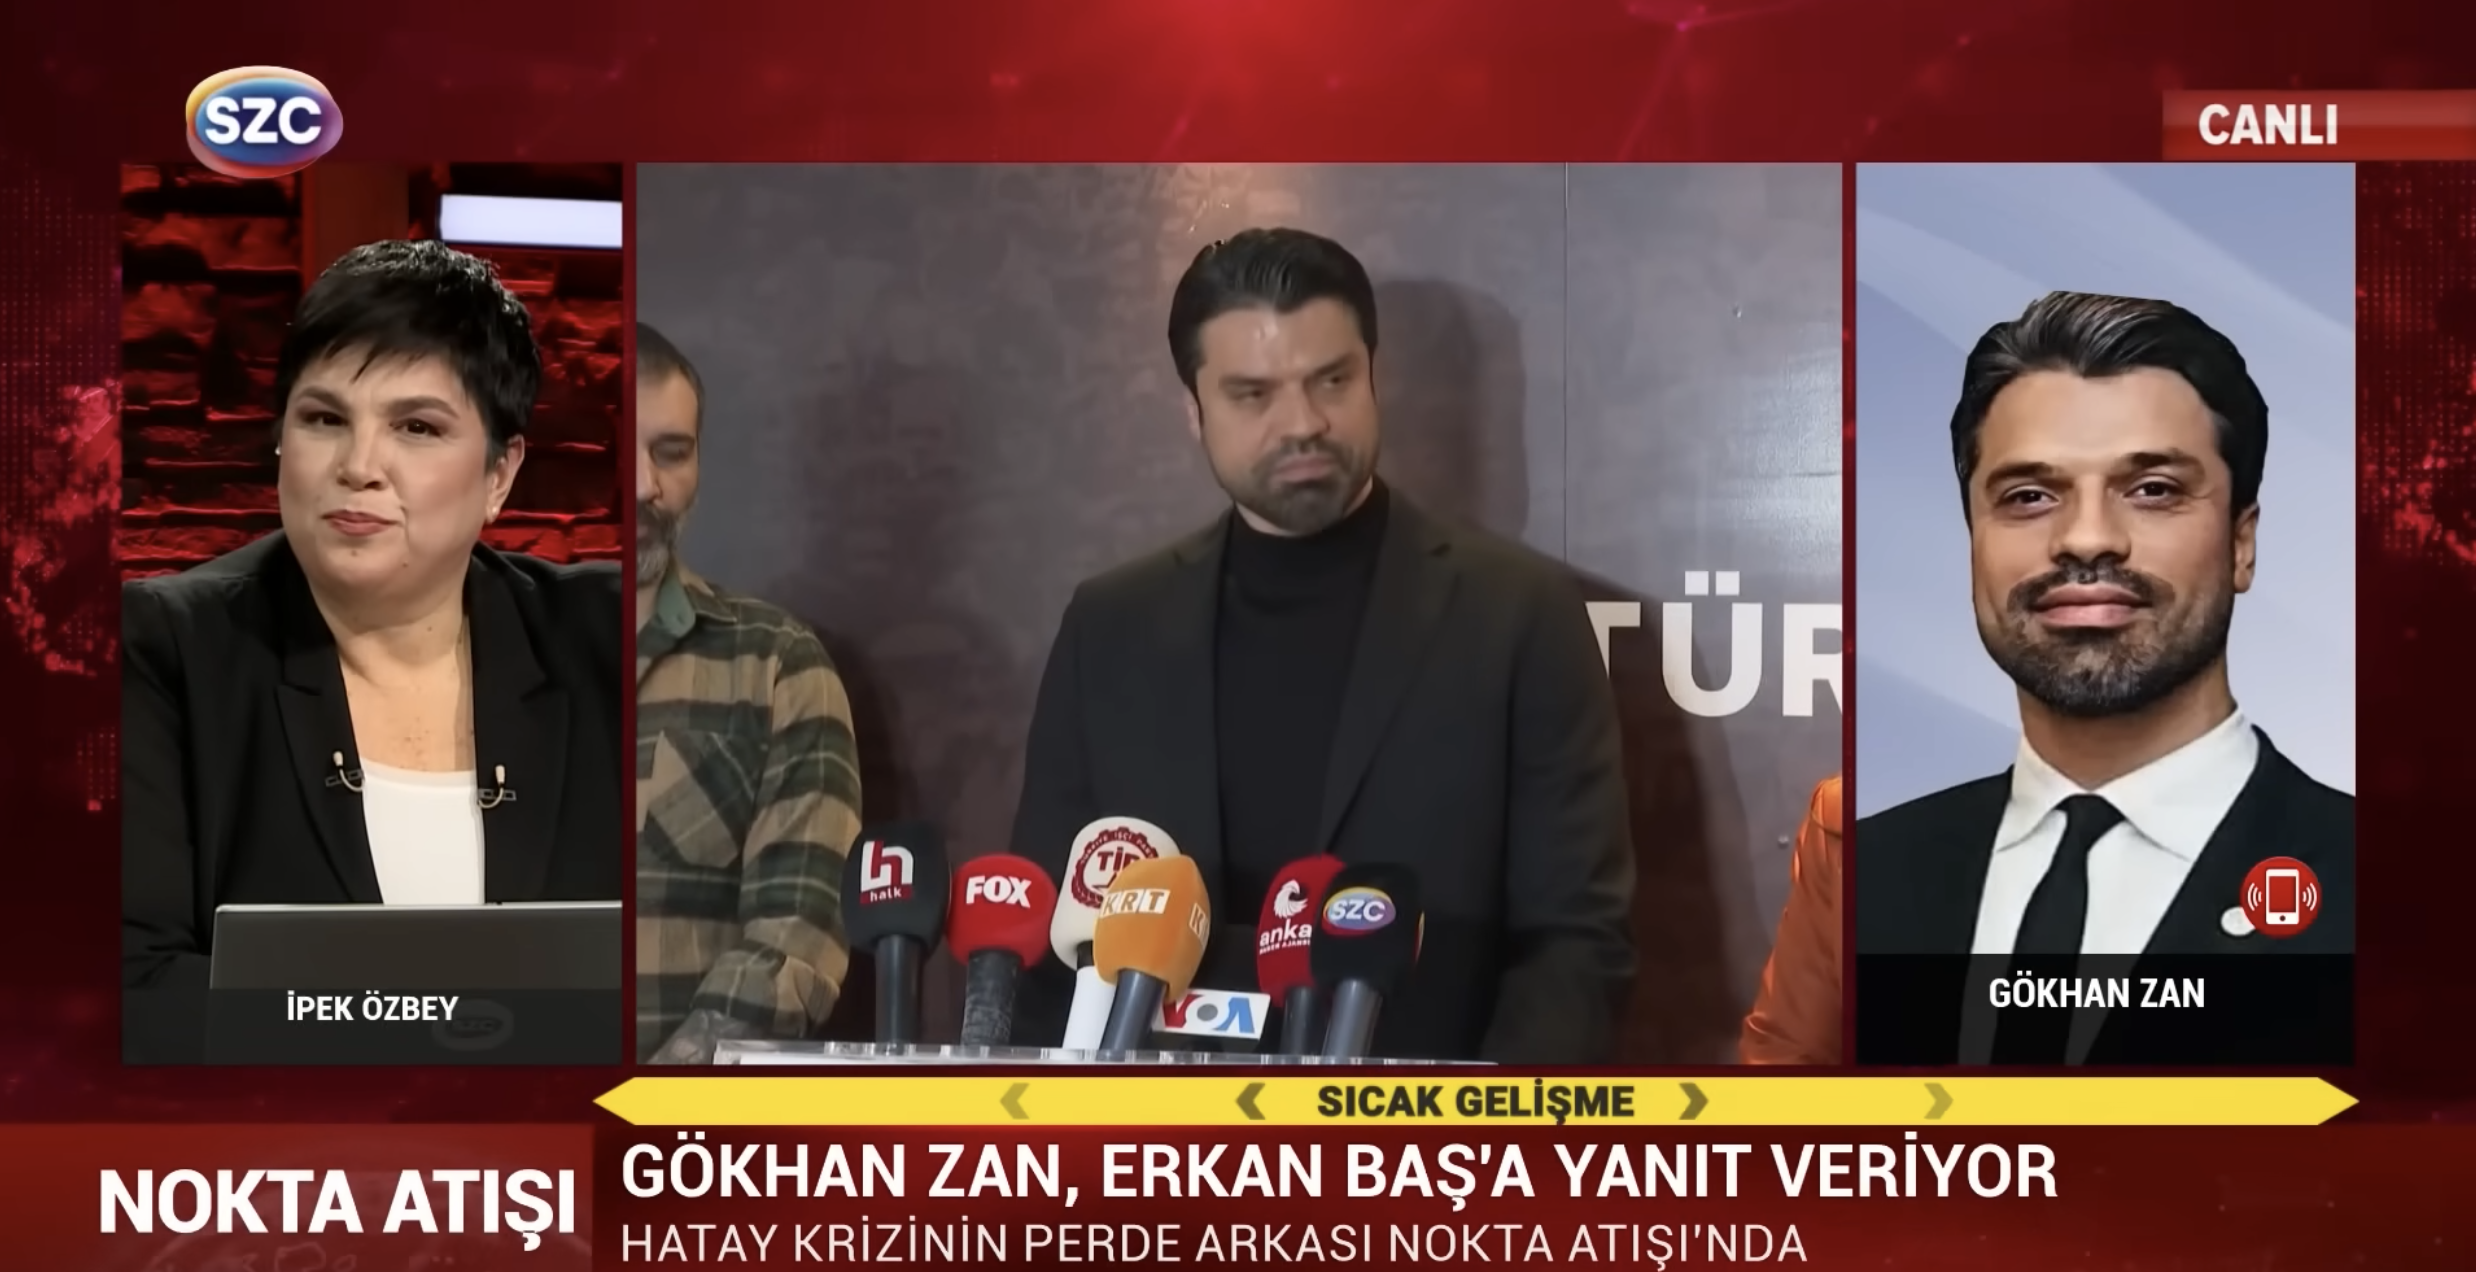 Gökhan Zan Olayı, ses kayıtları ve Erkan Baş; Gökhan Zan Sözcü TV'de İpek Özbey'e açıklamalarda bulunuyor.